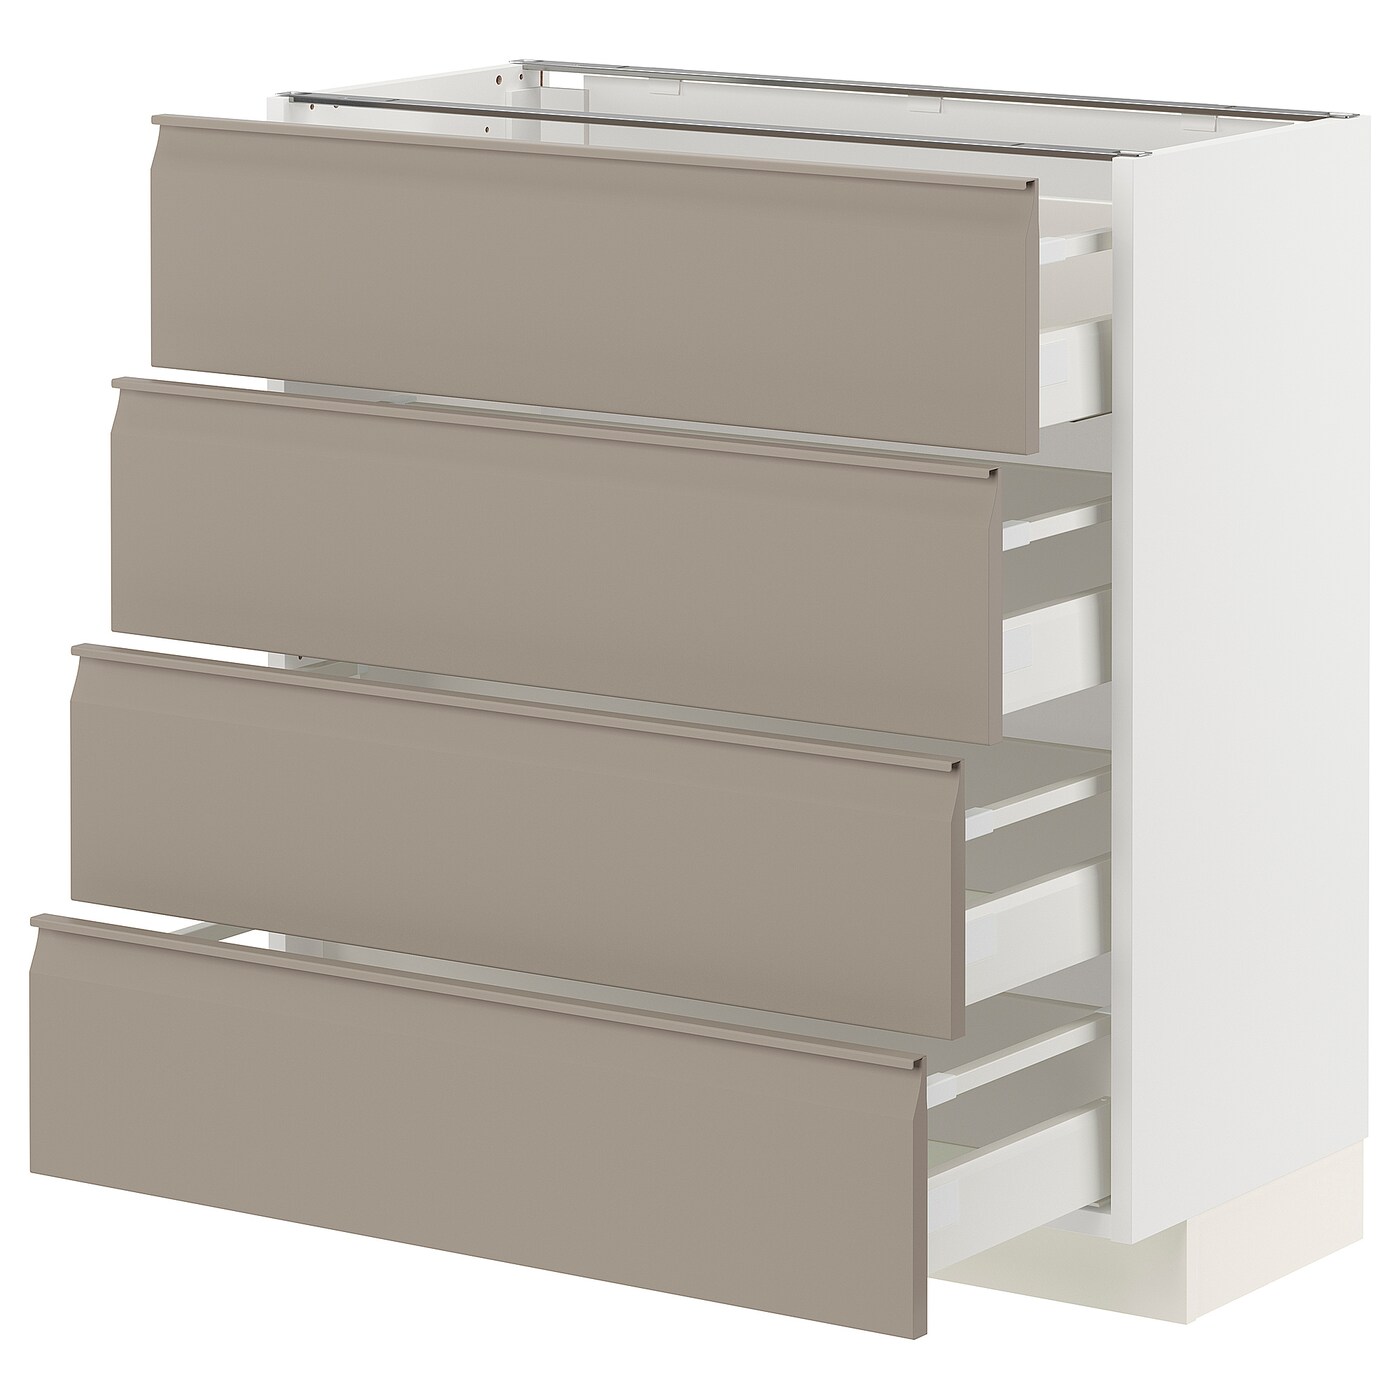 Напольный кухонный шкаф  - IKEA METOD MAXIMERA, 88x39,2x80см, белый/светло-коричневый, МЕТОД МАКСИМЕРА ИКЕА